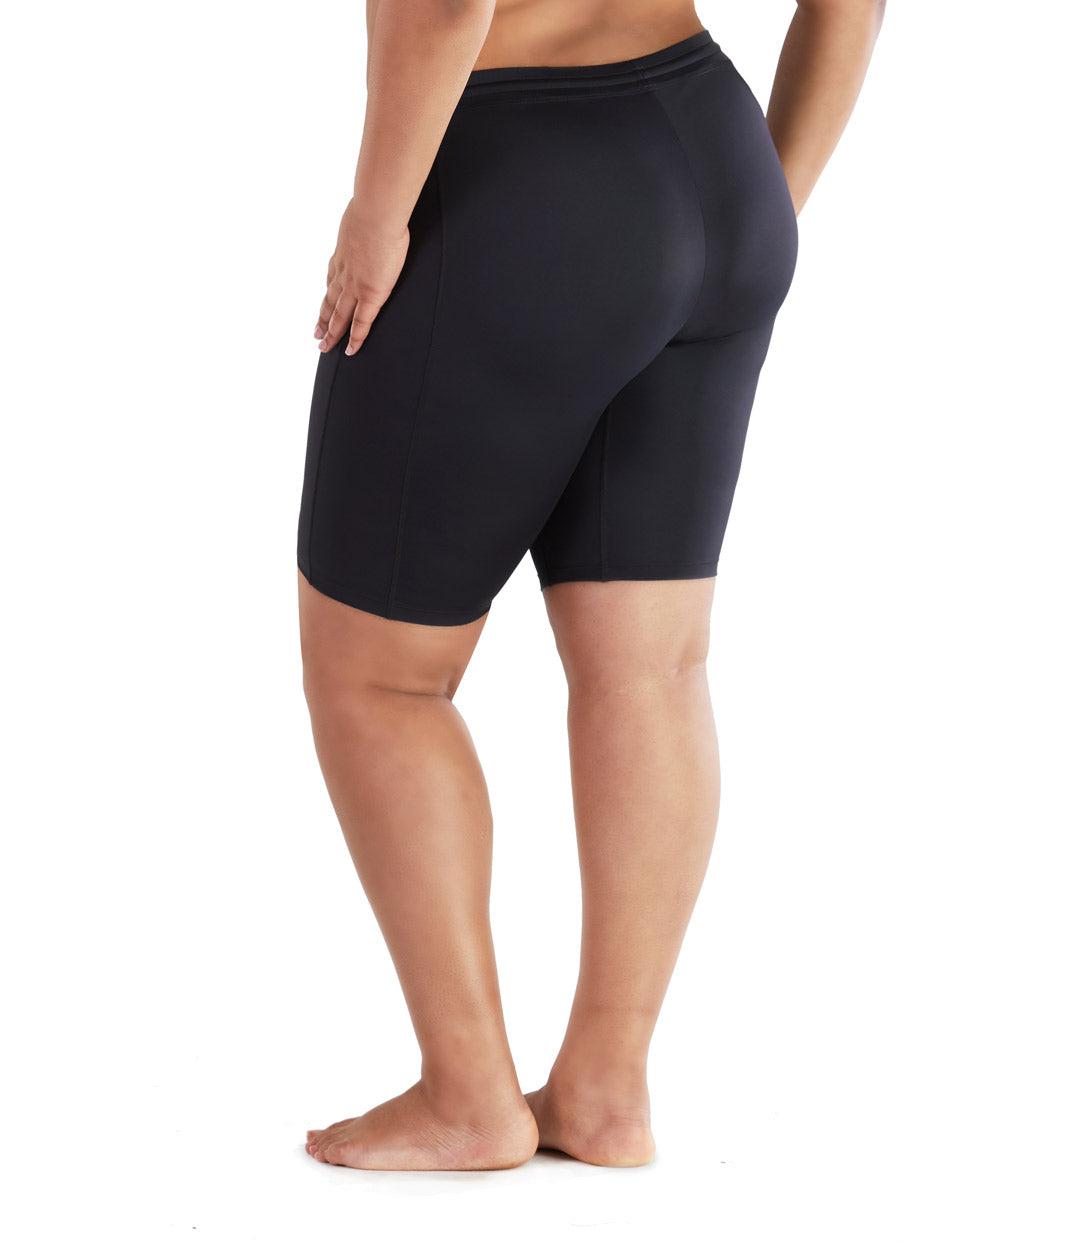 plus size swim shorts for ladies